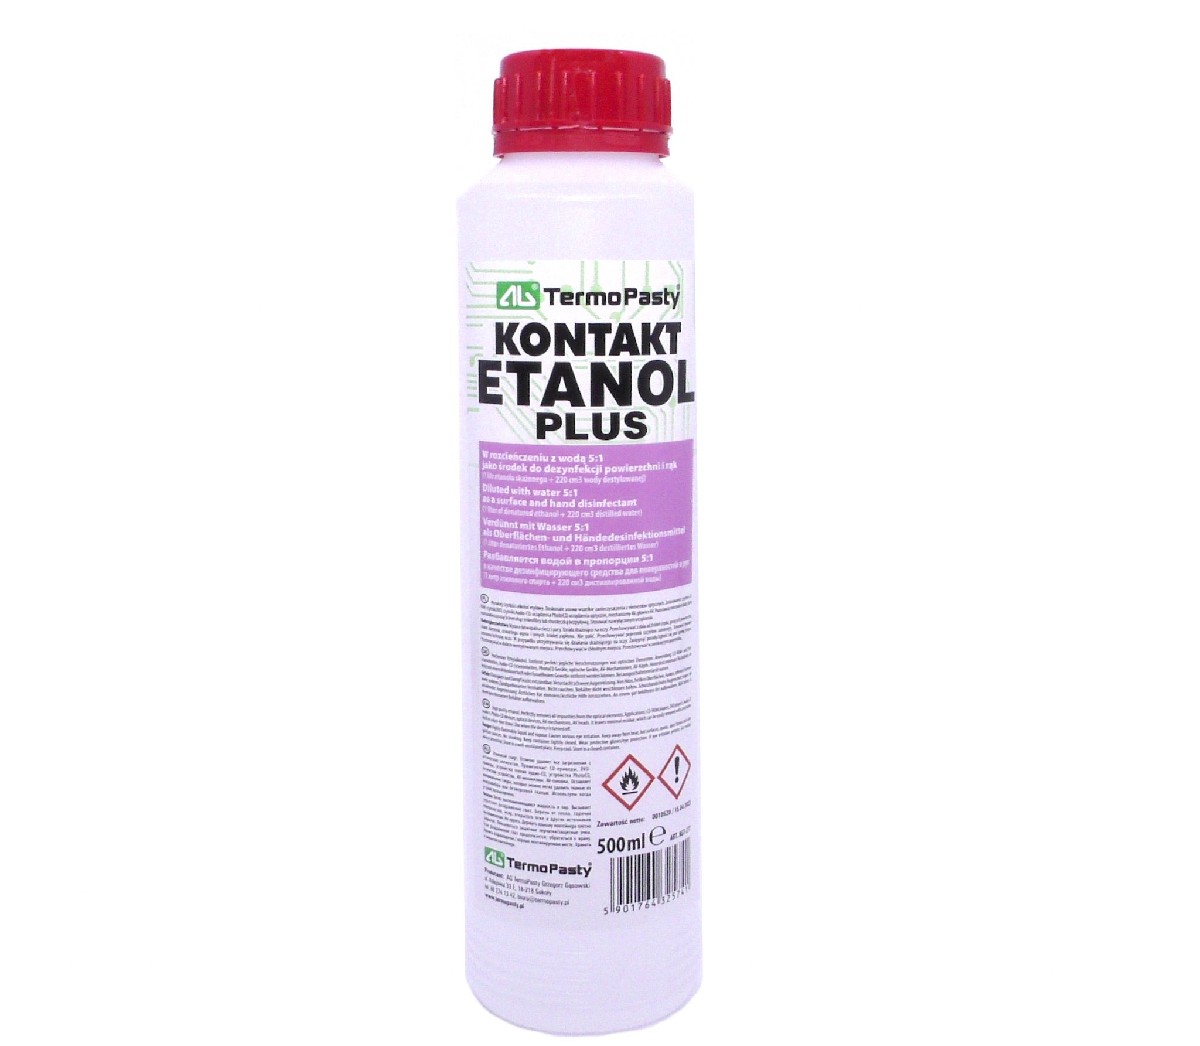 Αιθανόλη TermoPasty Kontakt Etanol Plus για καθαρισμό Συσκευών, Επιφανειών και Χεριών 500ml